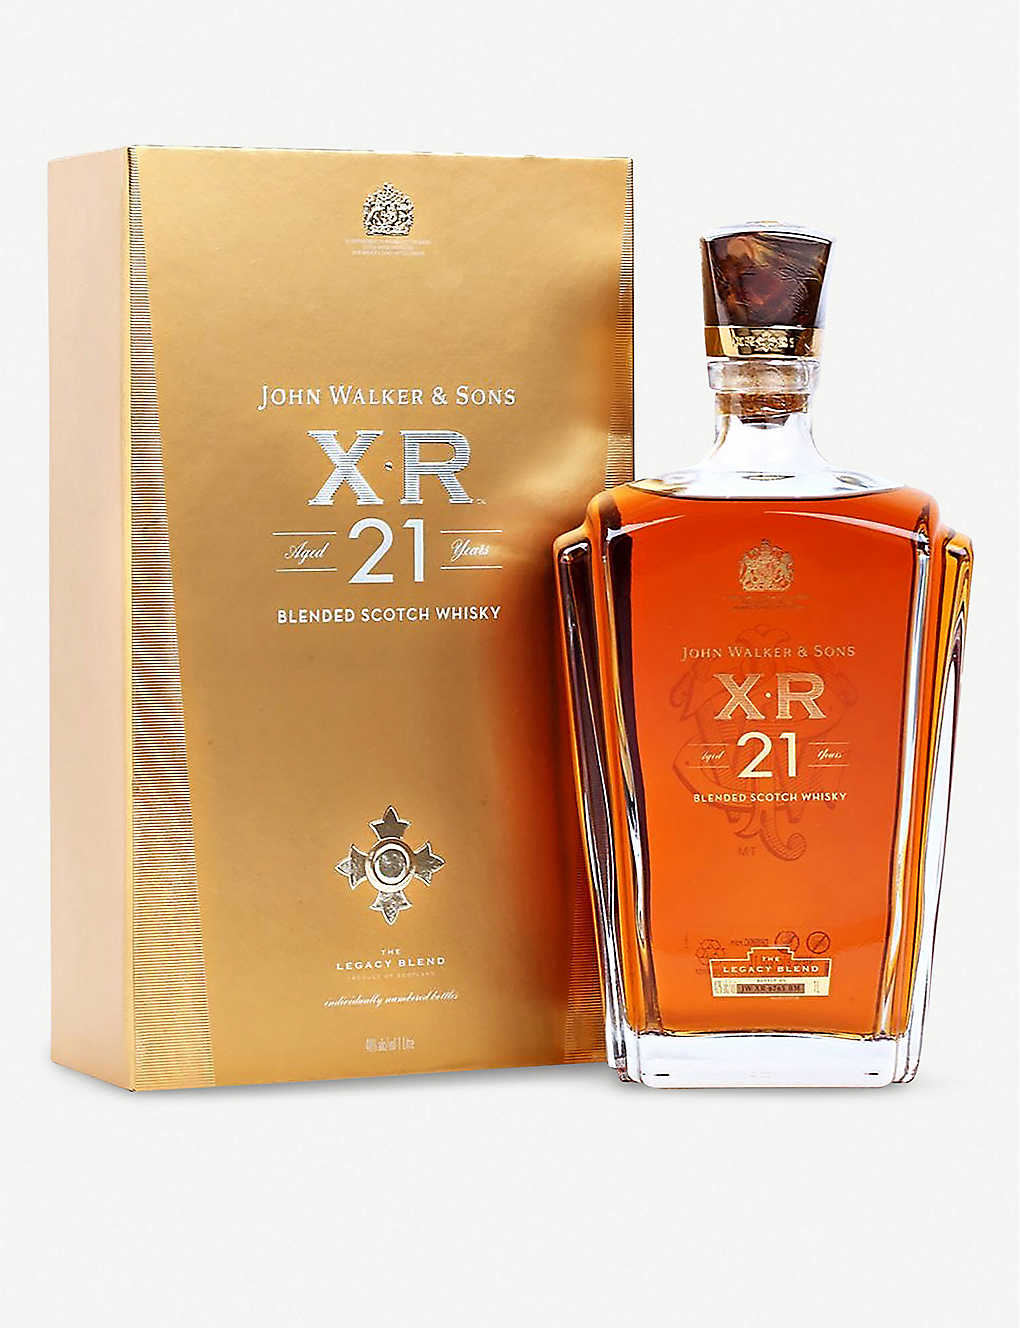 John Walker & Sons XR Blended Scotch Whisky Aged 21 Yrs 1 Liter Empty Bottle box 